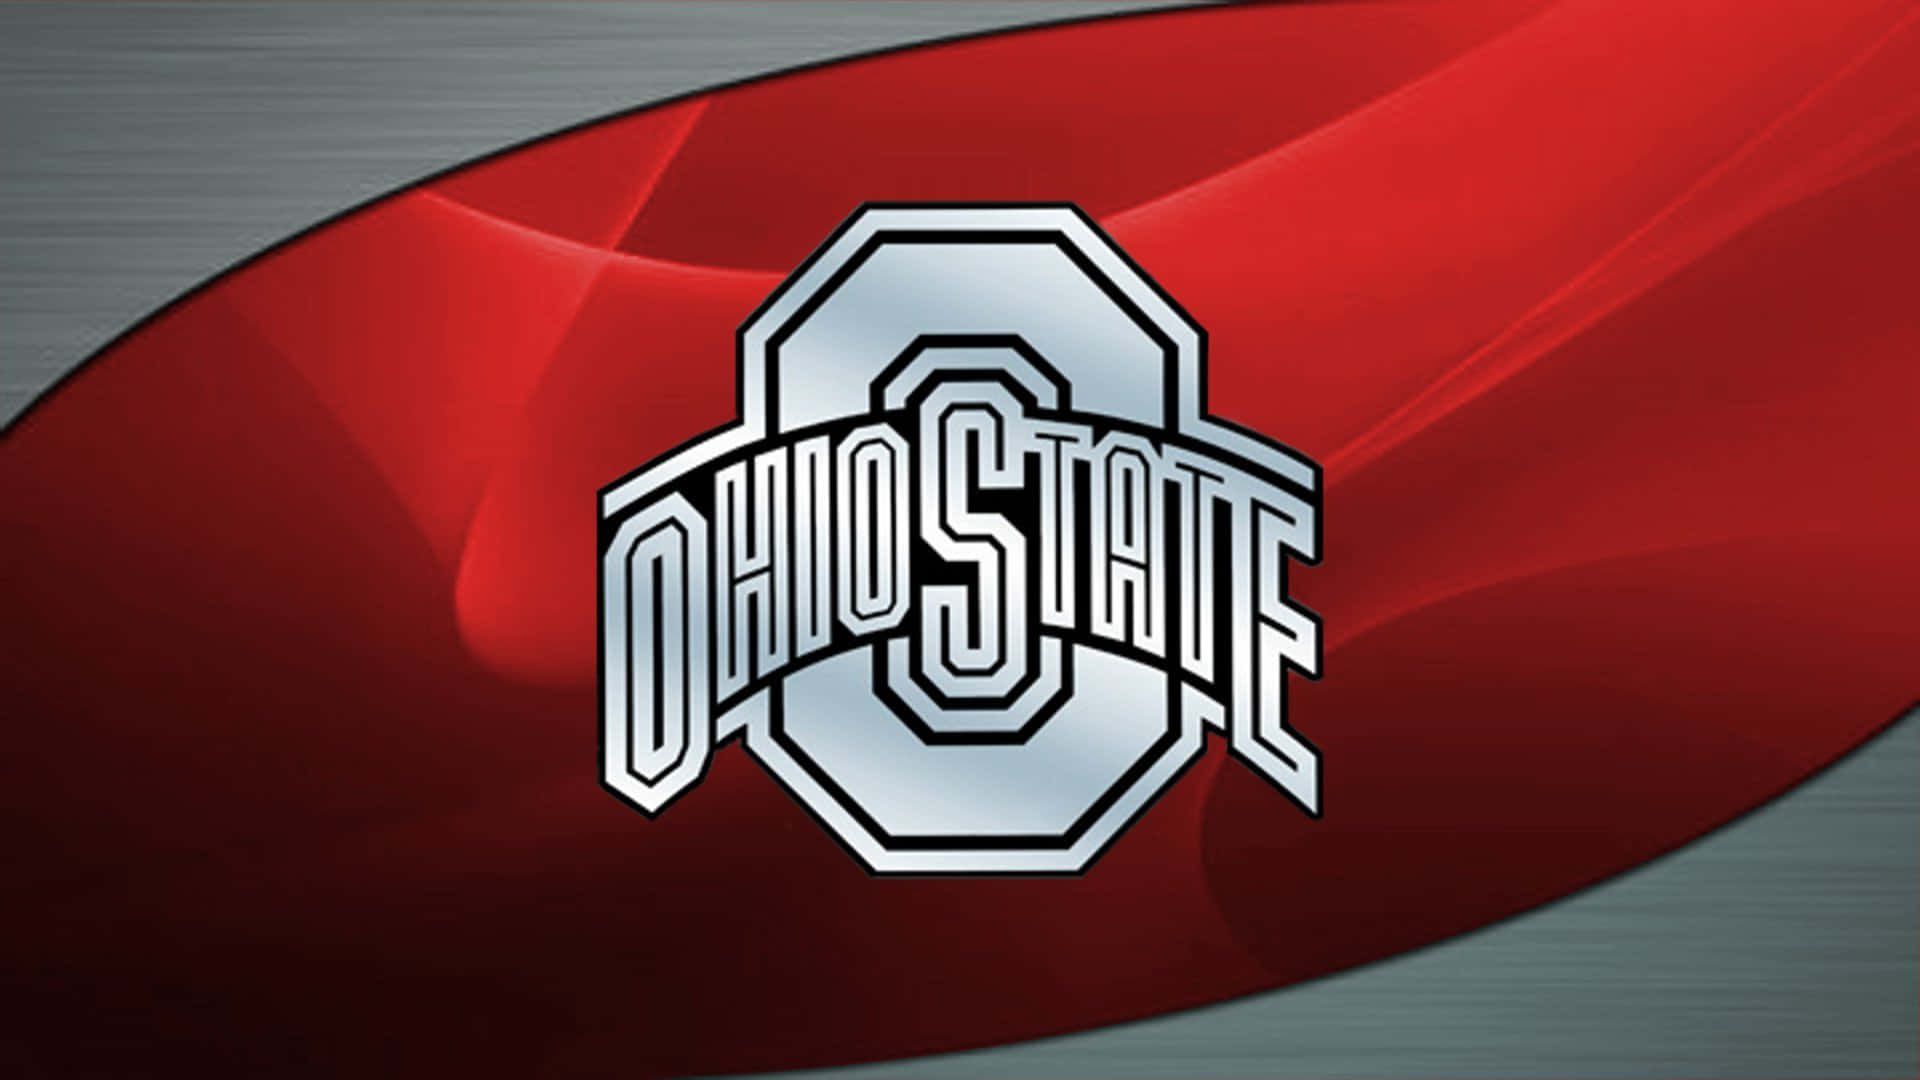 Logotipode Ohio State En Color Plata Metálico. Fondo de pantalla